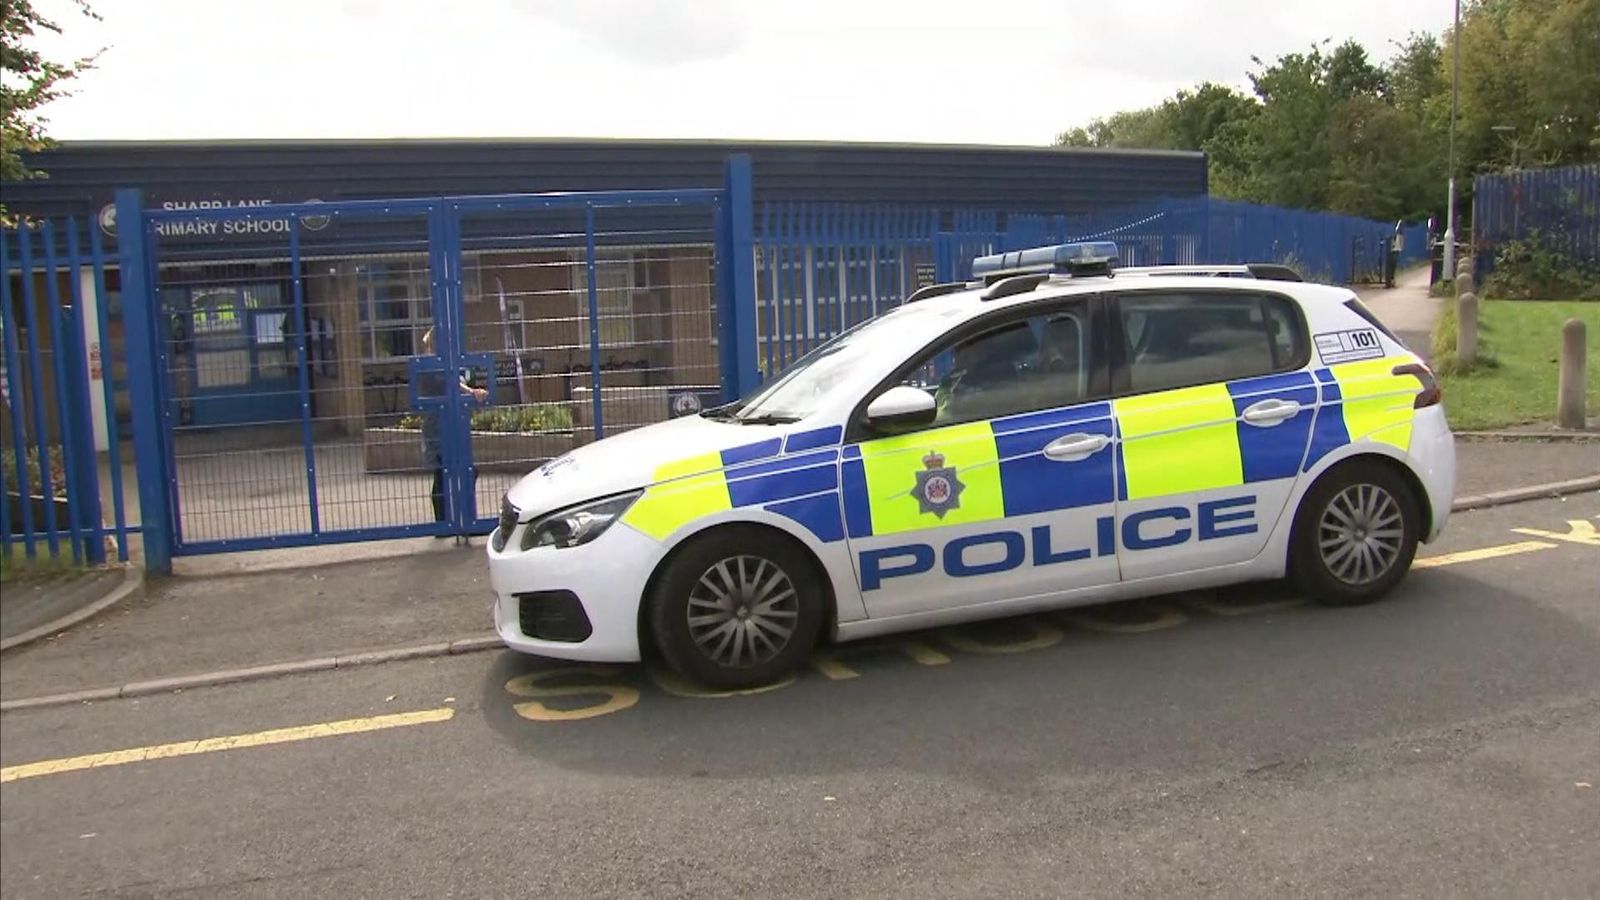 Блокиране на училище: Лице, арестувано след заплахи по имейл в градовете Лийдс и Брадфорд в Западен Йоркшир